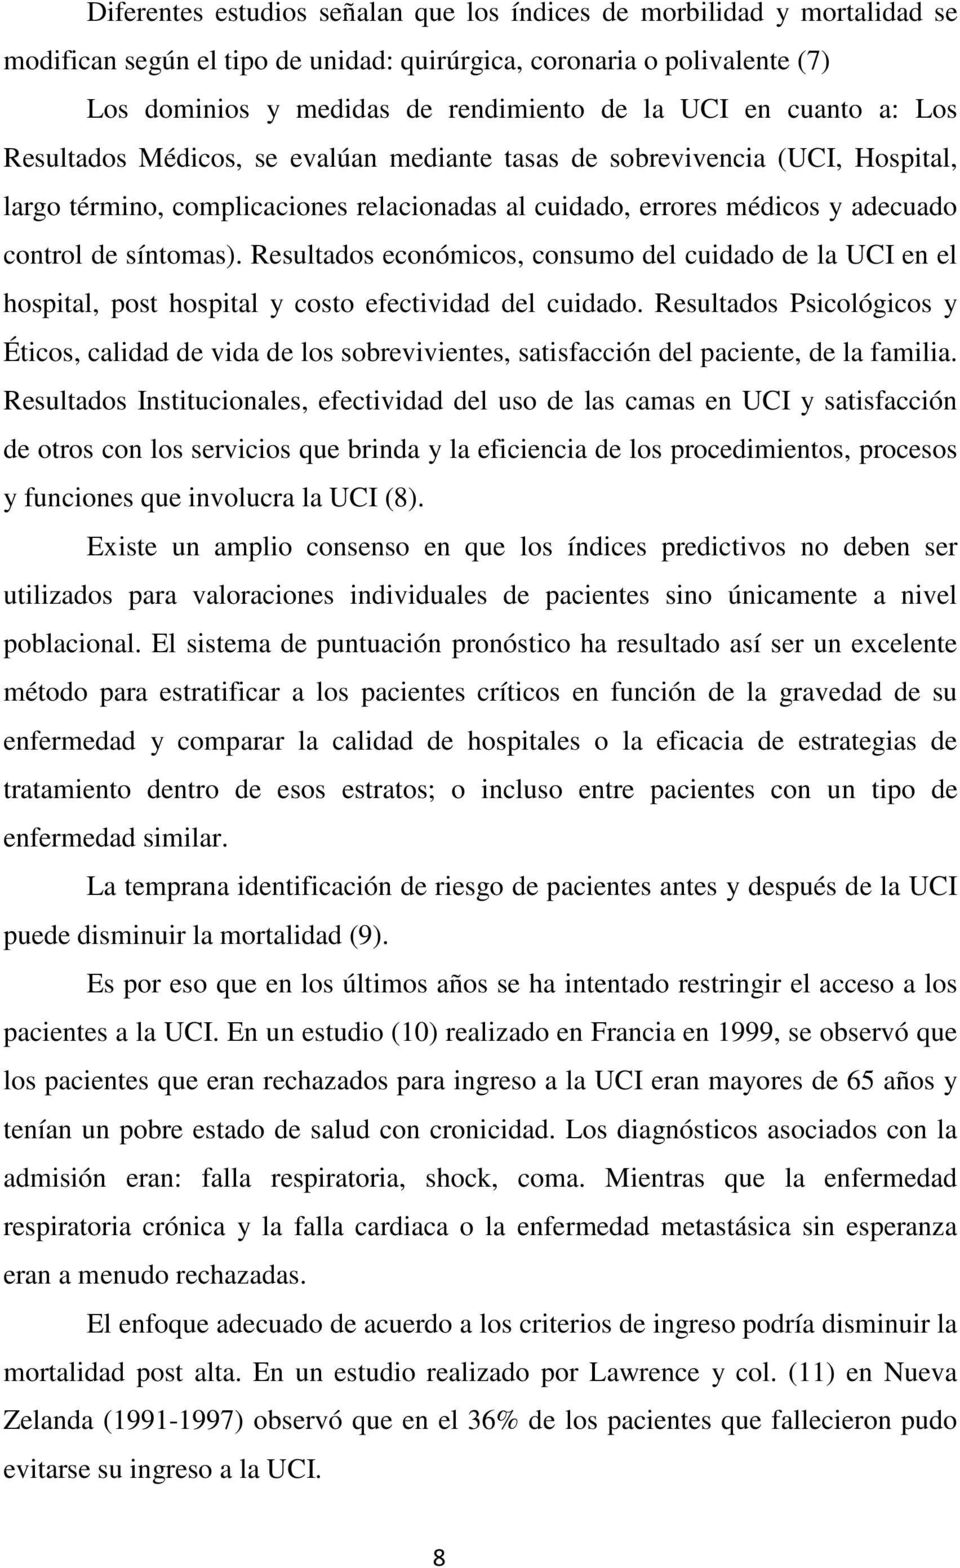 Resultados económicos, consumo del cuidado de la UCI en el hospital, post hospital y costo efectividad del cuidado.